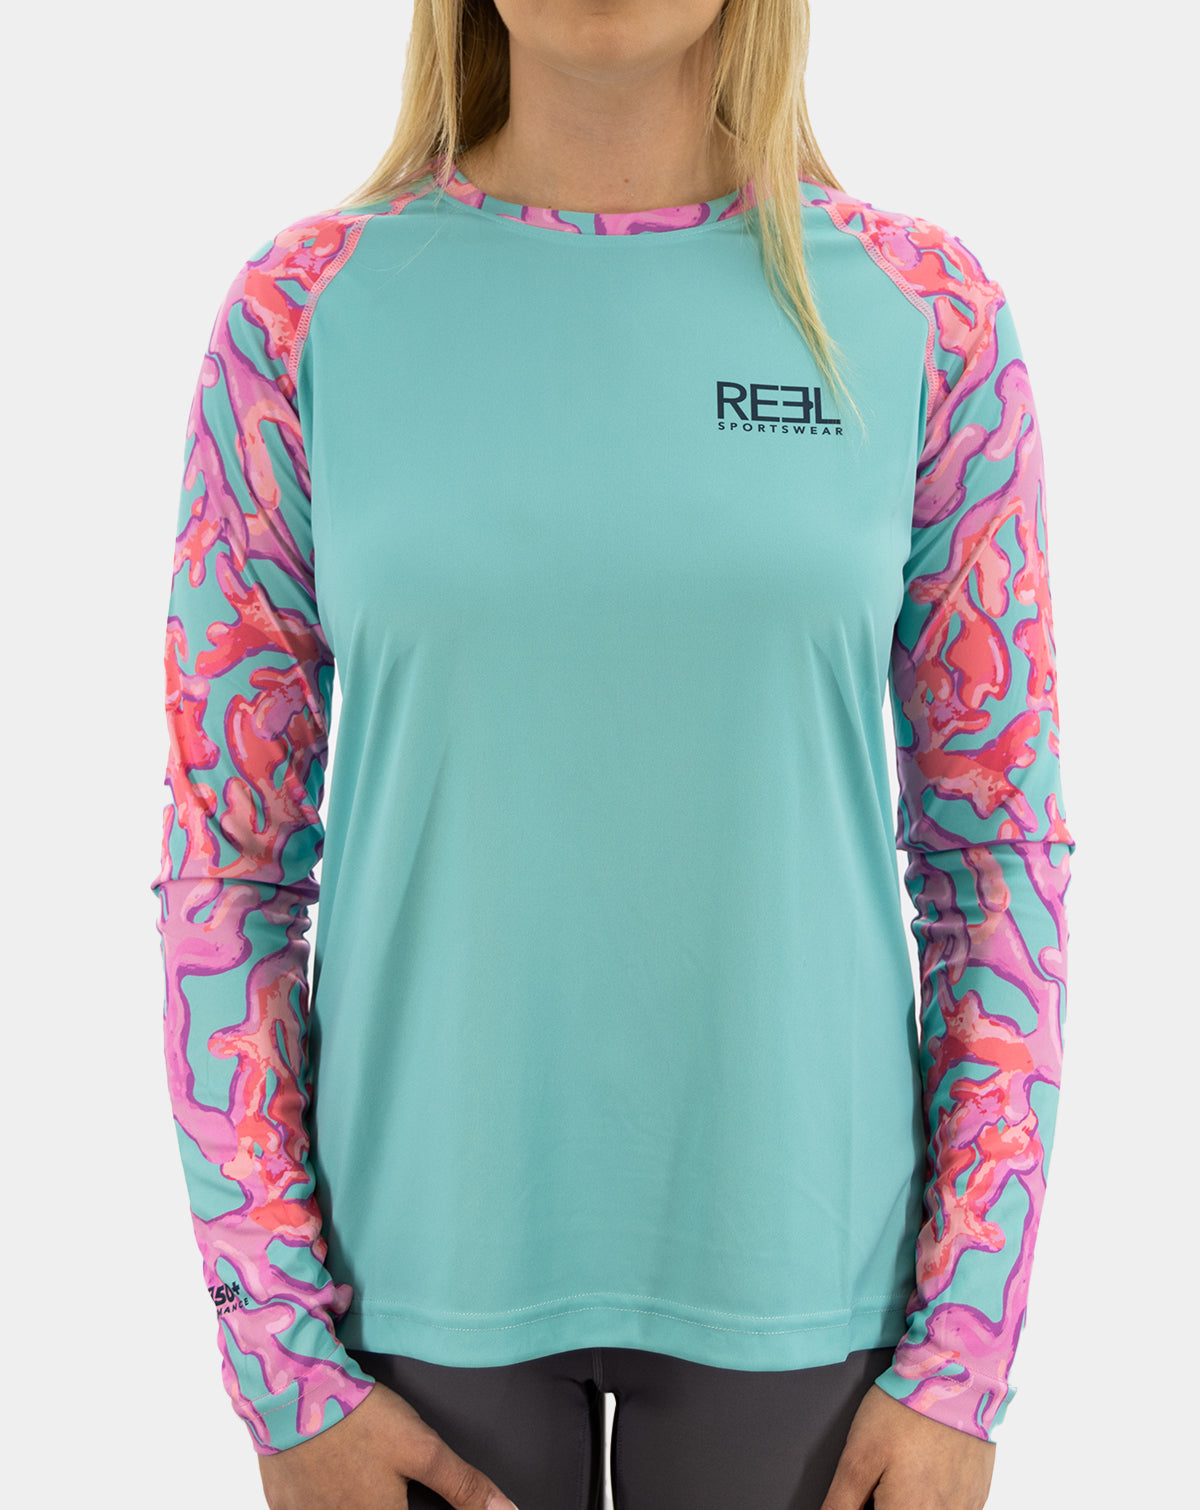 Reel life XL short sleeve fishing shirt